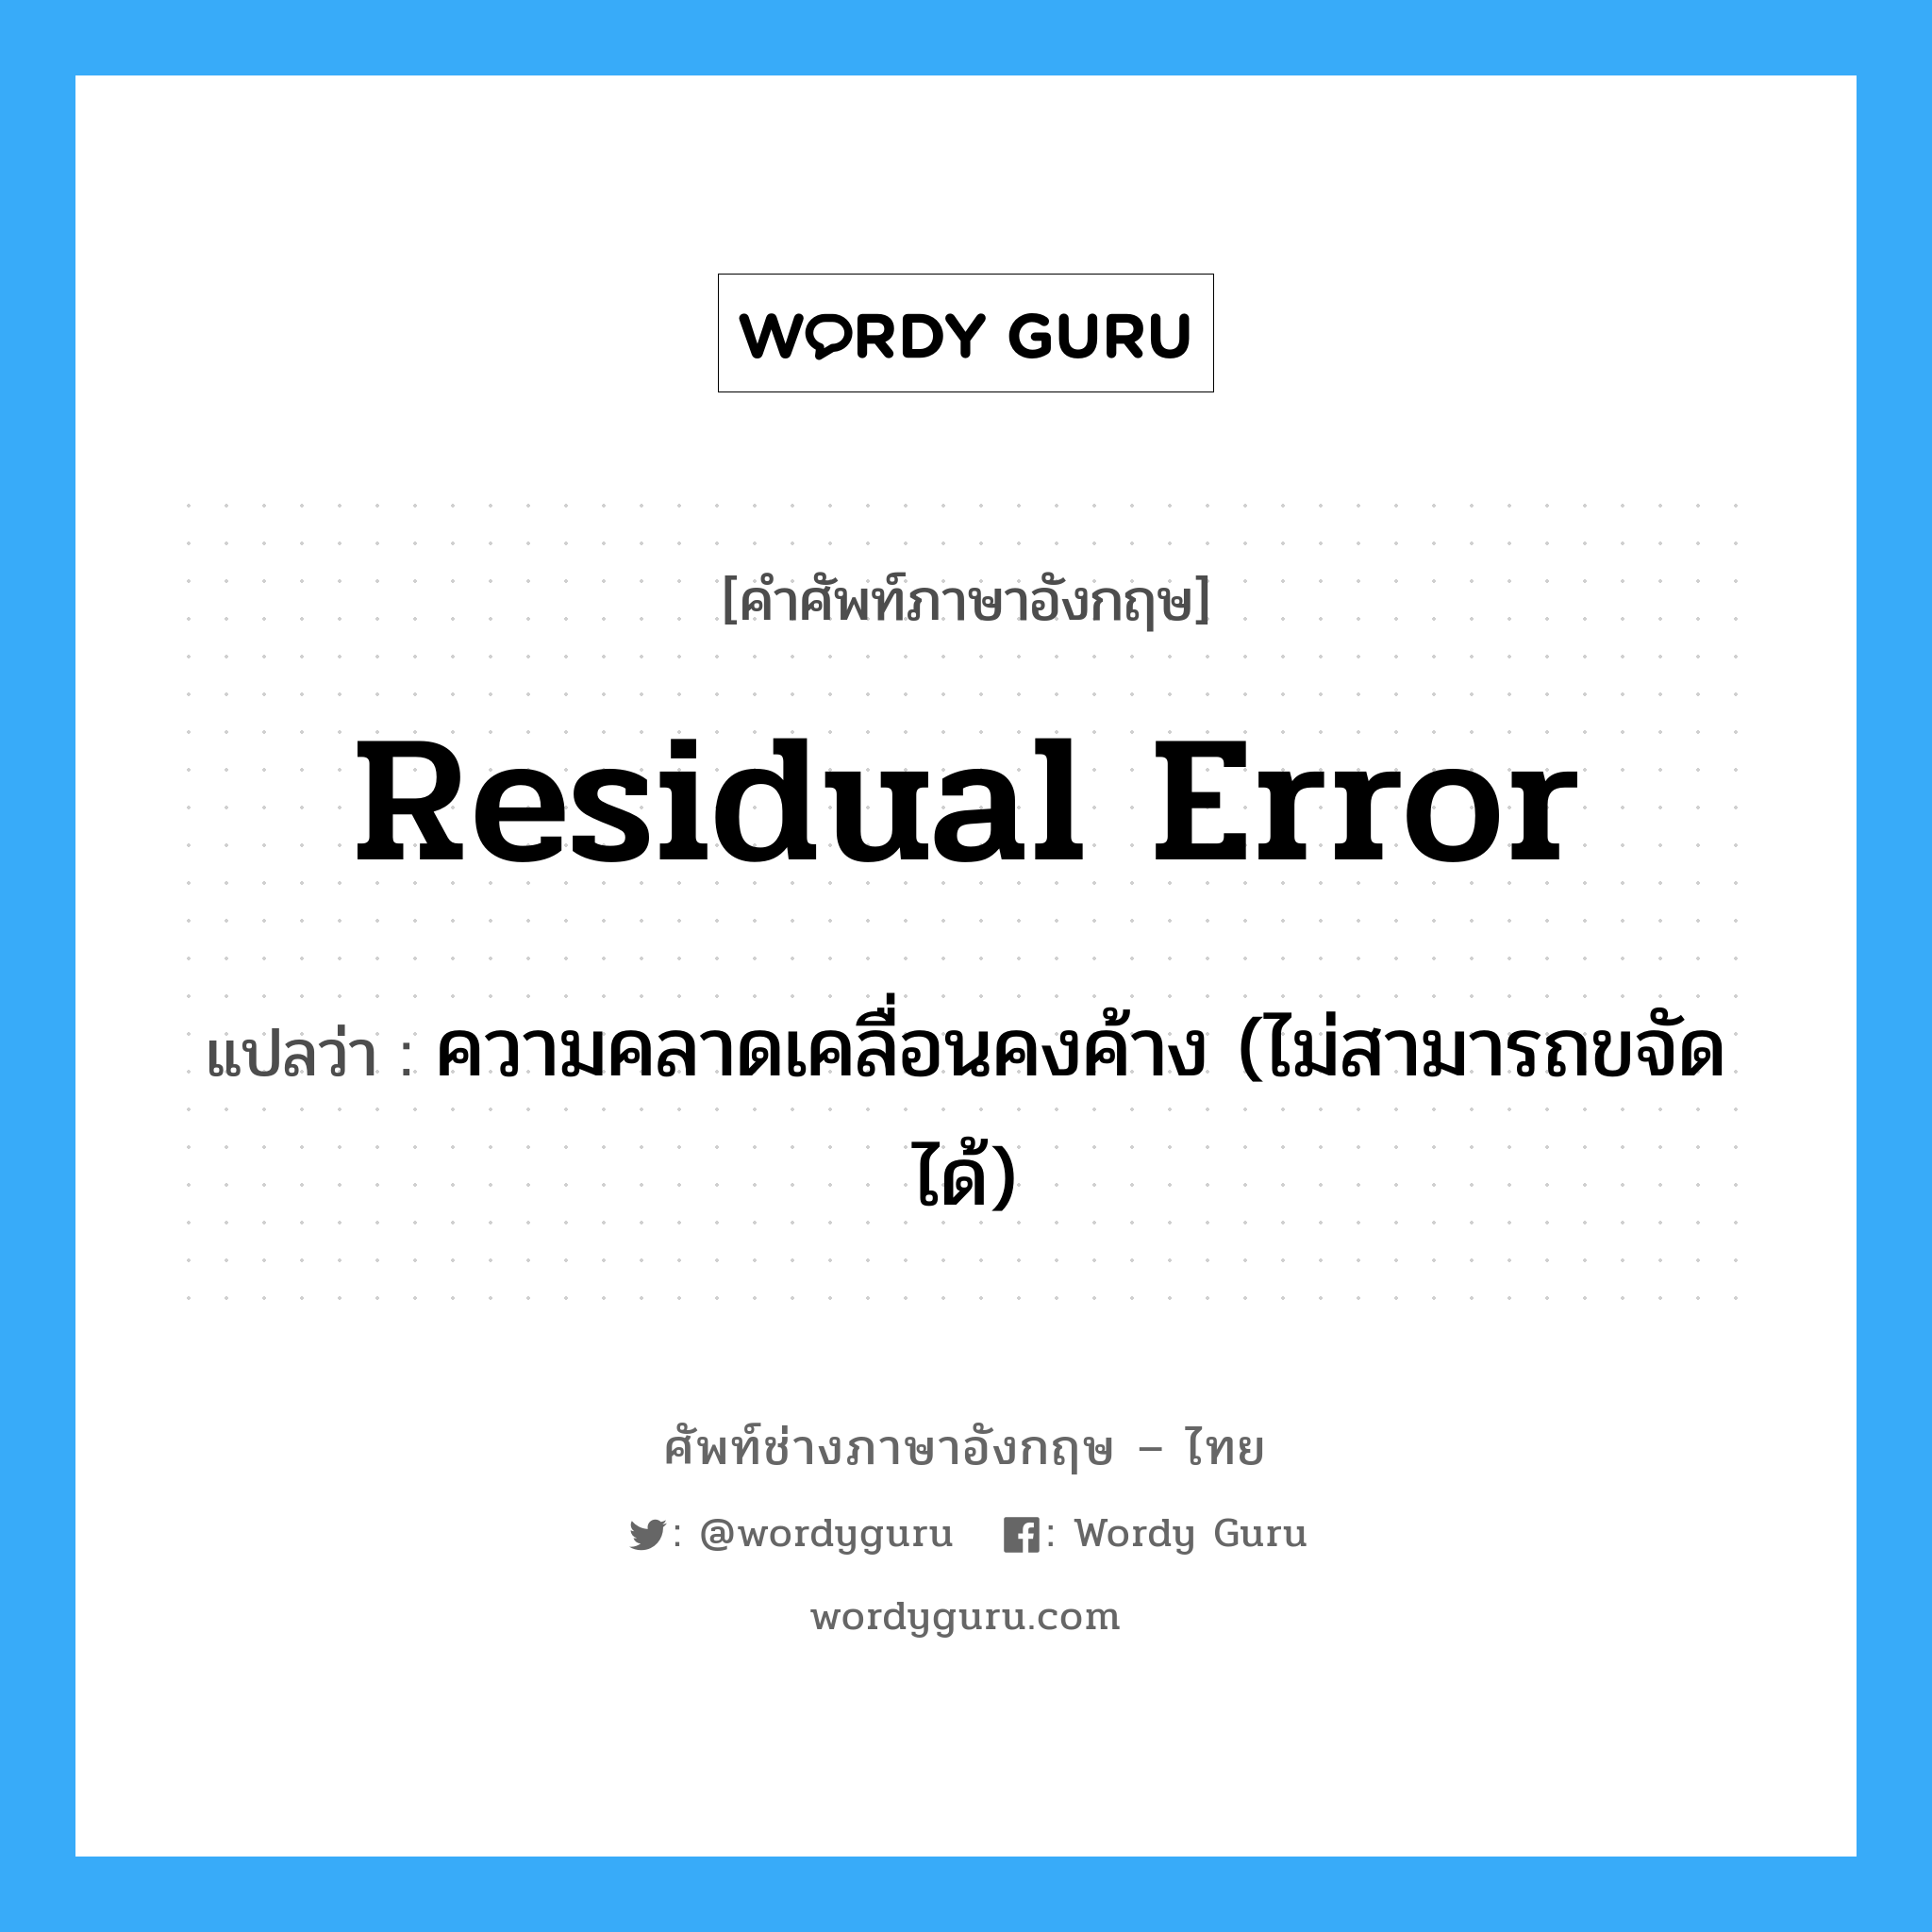 residual error แปลว่า?, คำศัพท์ช่างภาษาอังกฤษ - ไทย residual error คำศัพท์ภาษาอังกฤษ residual error แปลว่า ความคลาดเคลื่อนคงค้าง (ไม่สามารถขจัดได้)